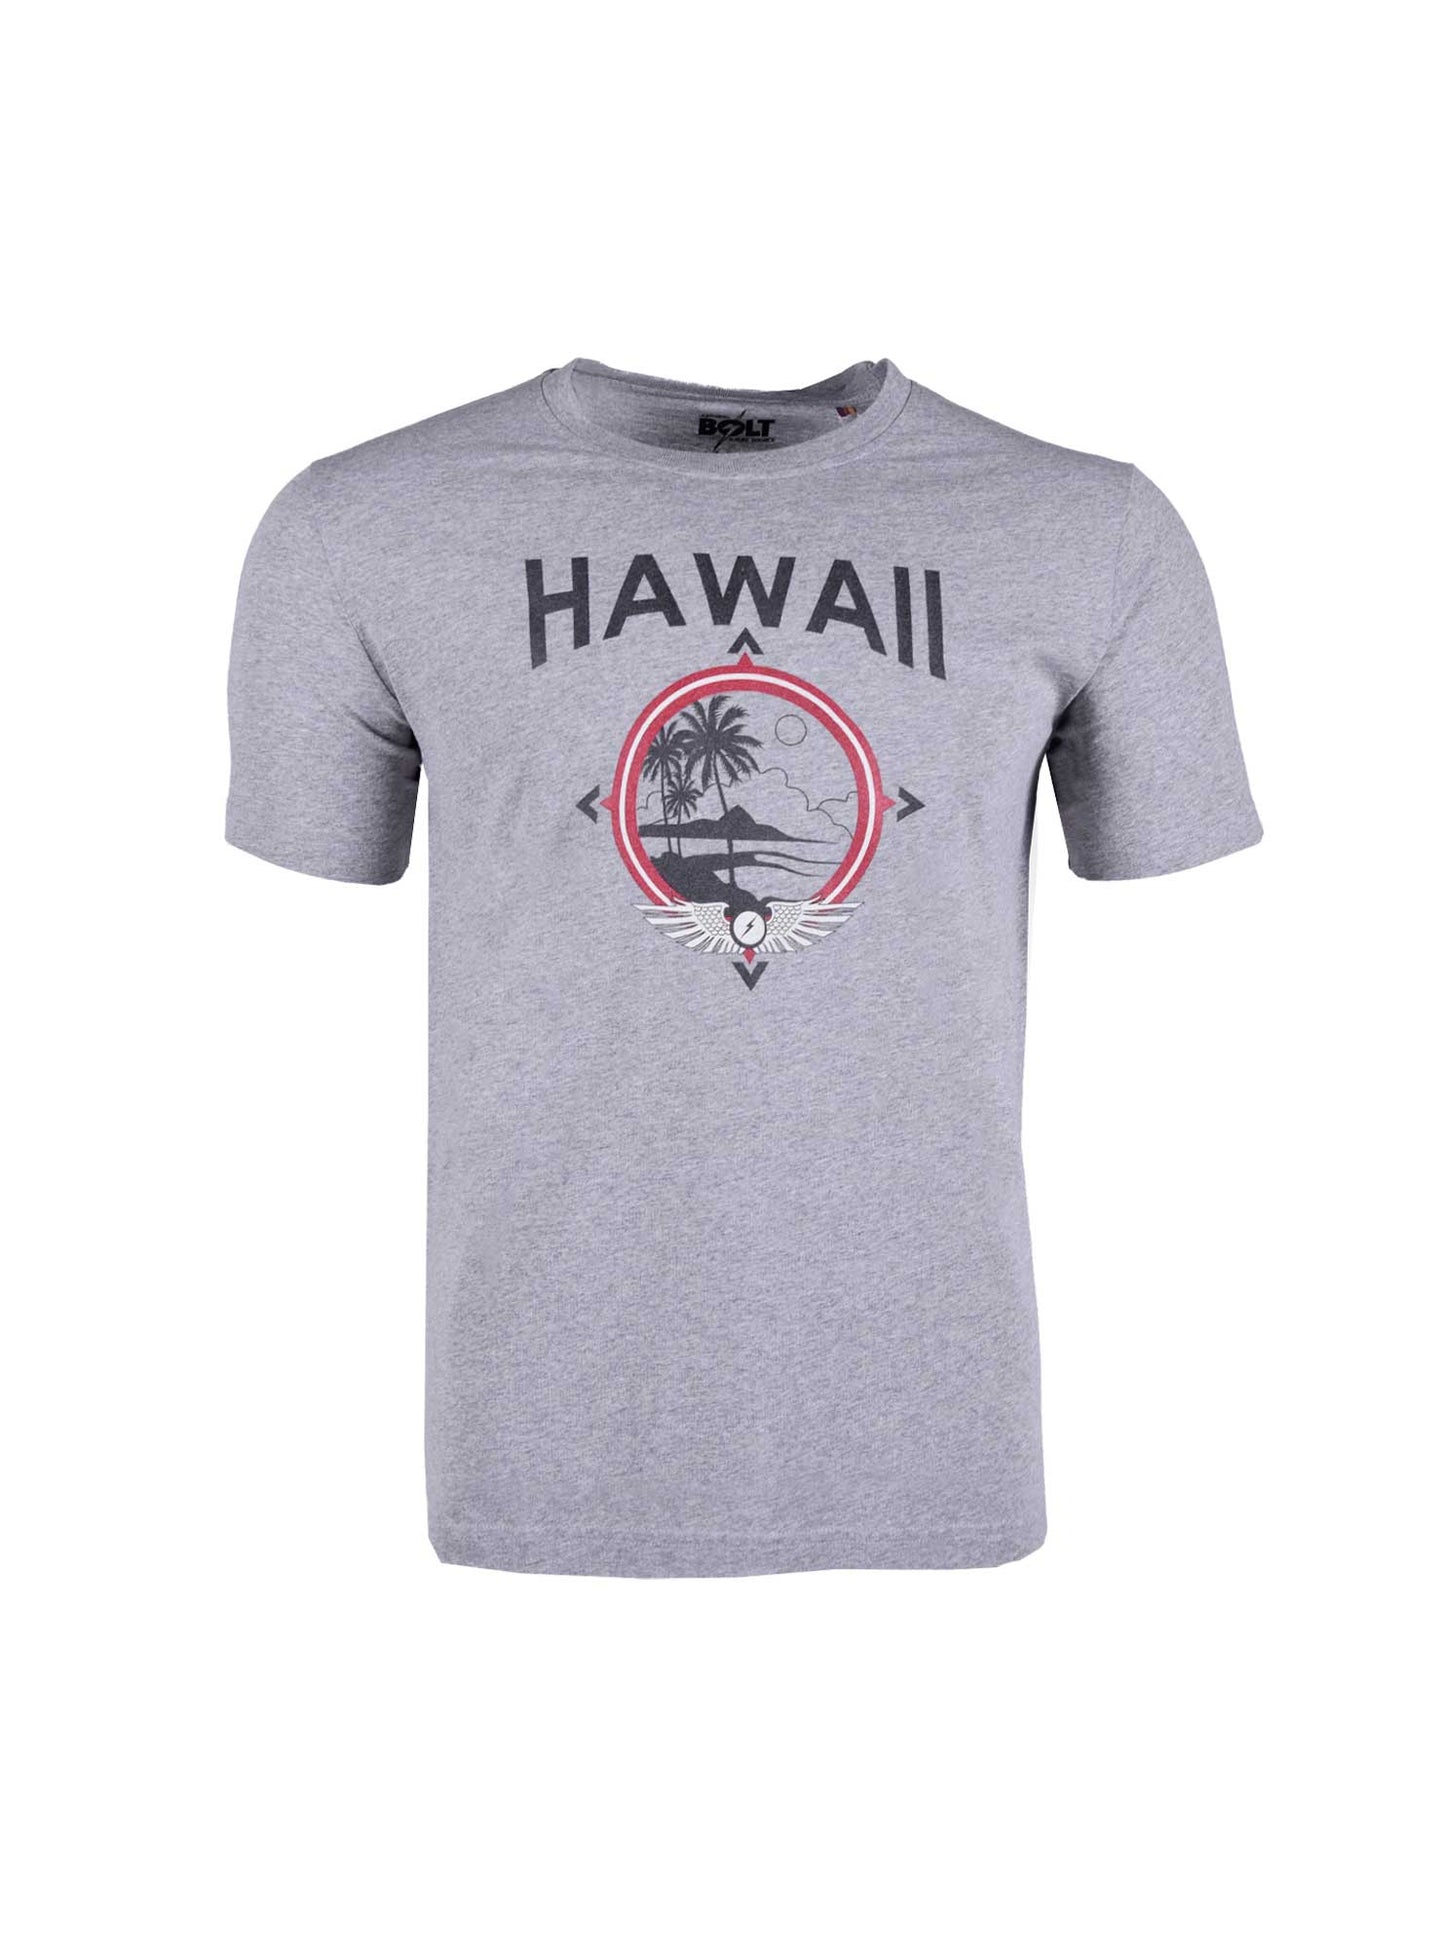 Camiseta De Manga Corta Lightning Bolt Hawaiian Hot Spot T-shirt - Confort Y Calidad Portuguesa  MKP